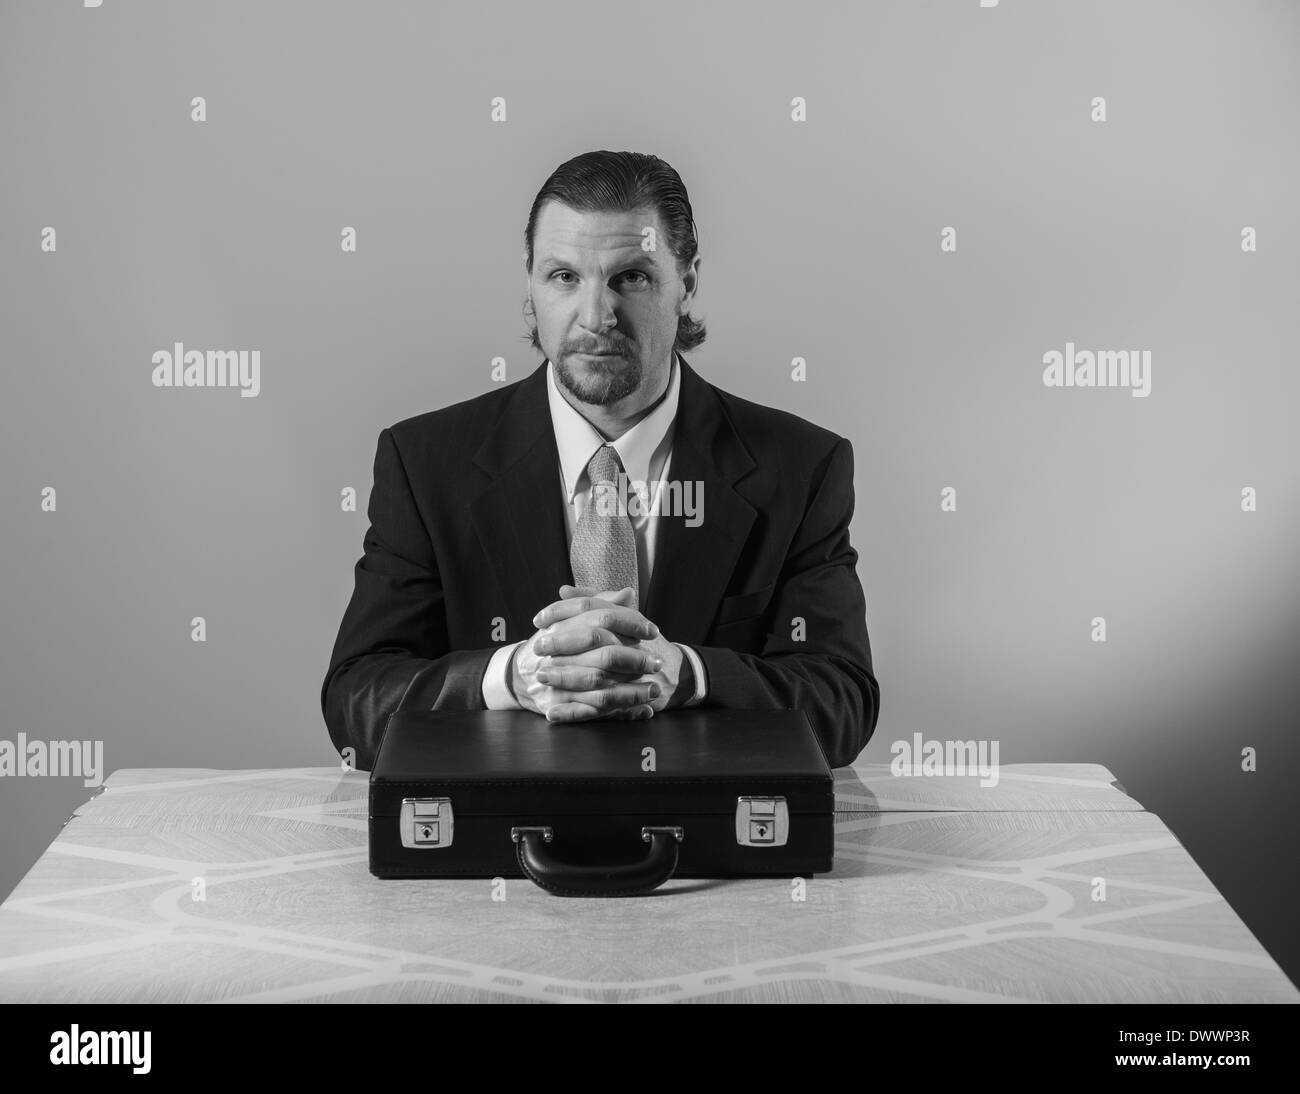 Un 42-year-old woman business man avec une barbiche portant un costume et une cravate est assis à une table de cuisine, les mains croisées sur un attaché-case. Banque D'Images